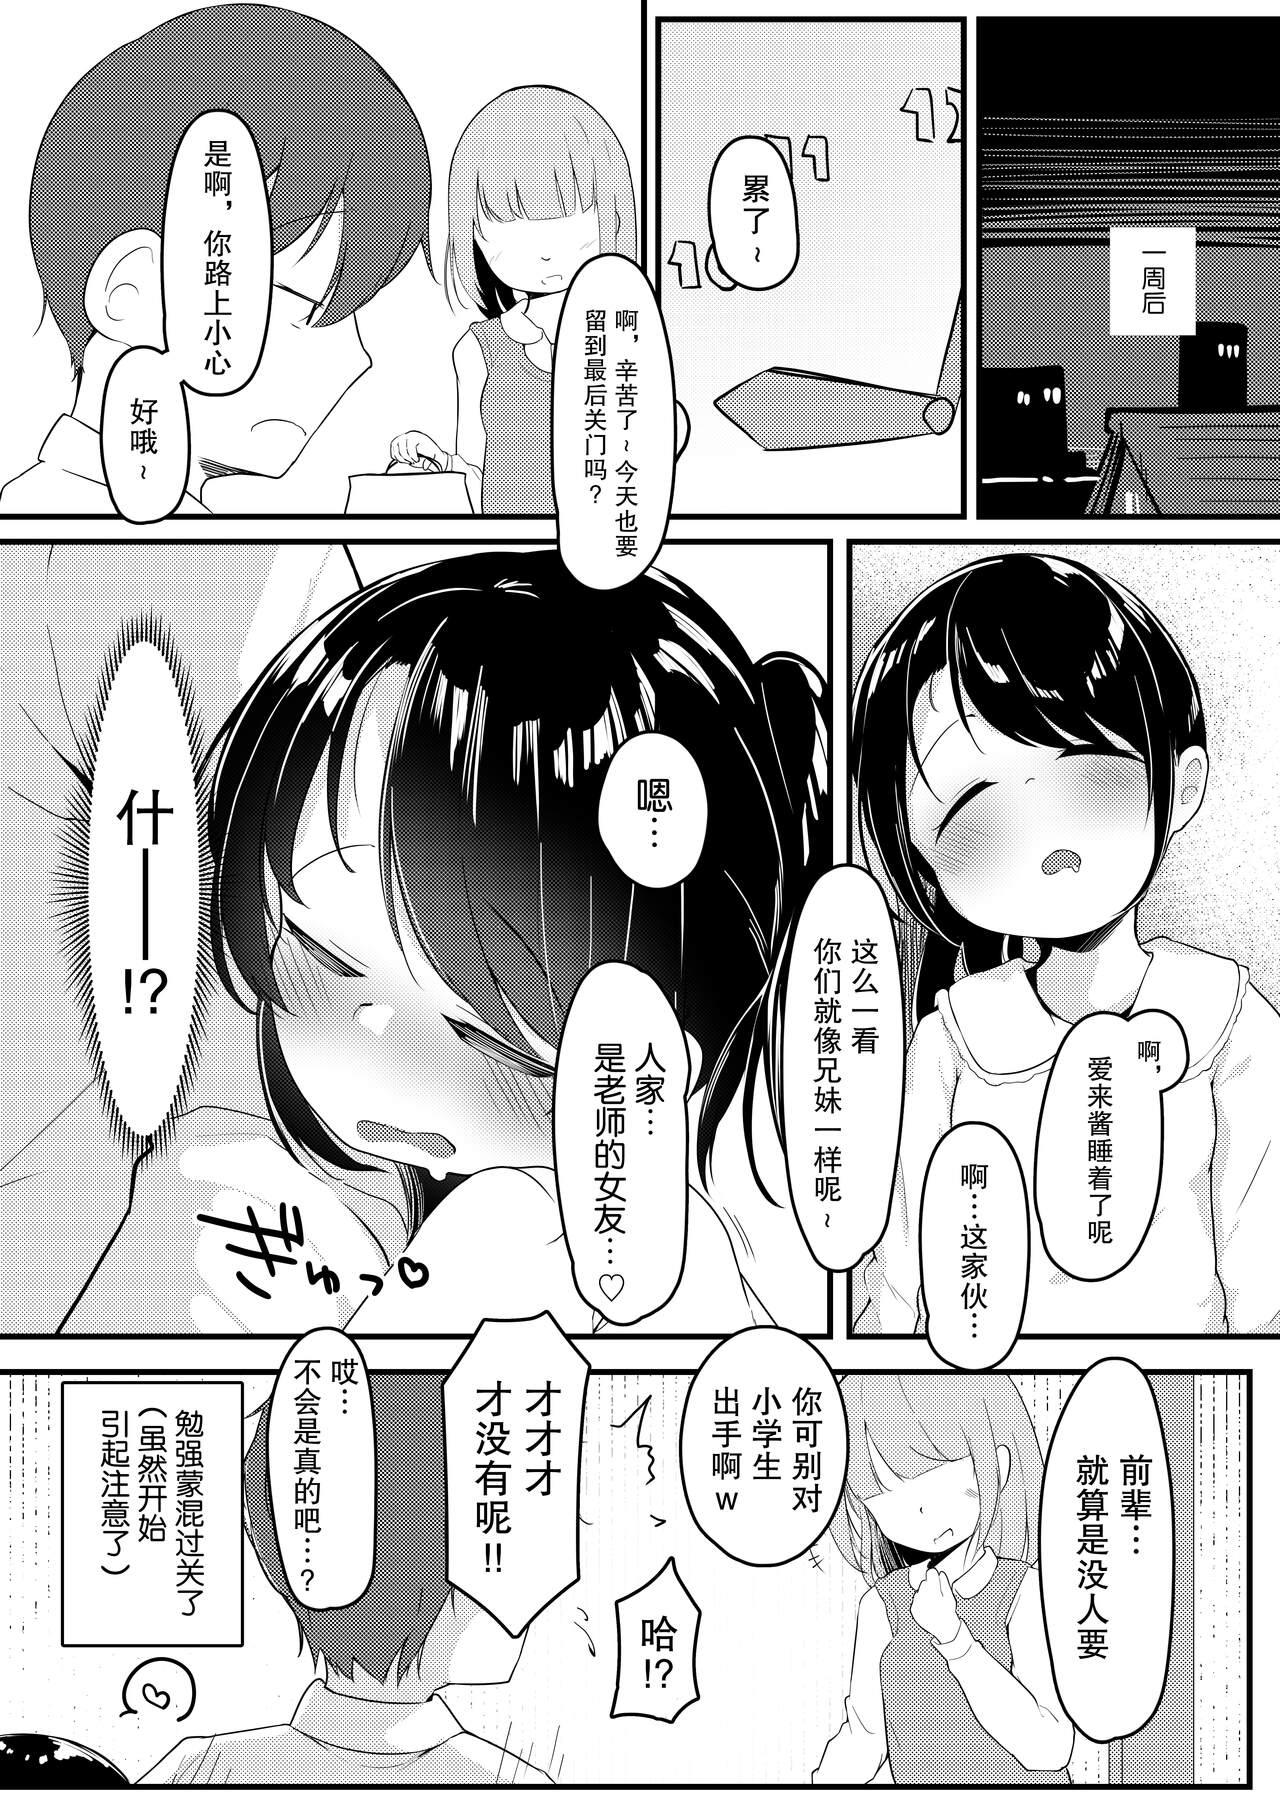 Wank Watashi ga Kanojo ja Dame desu ka? 2 - Original Athletic - Page 25